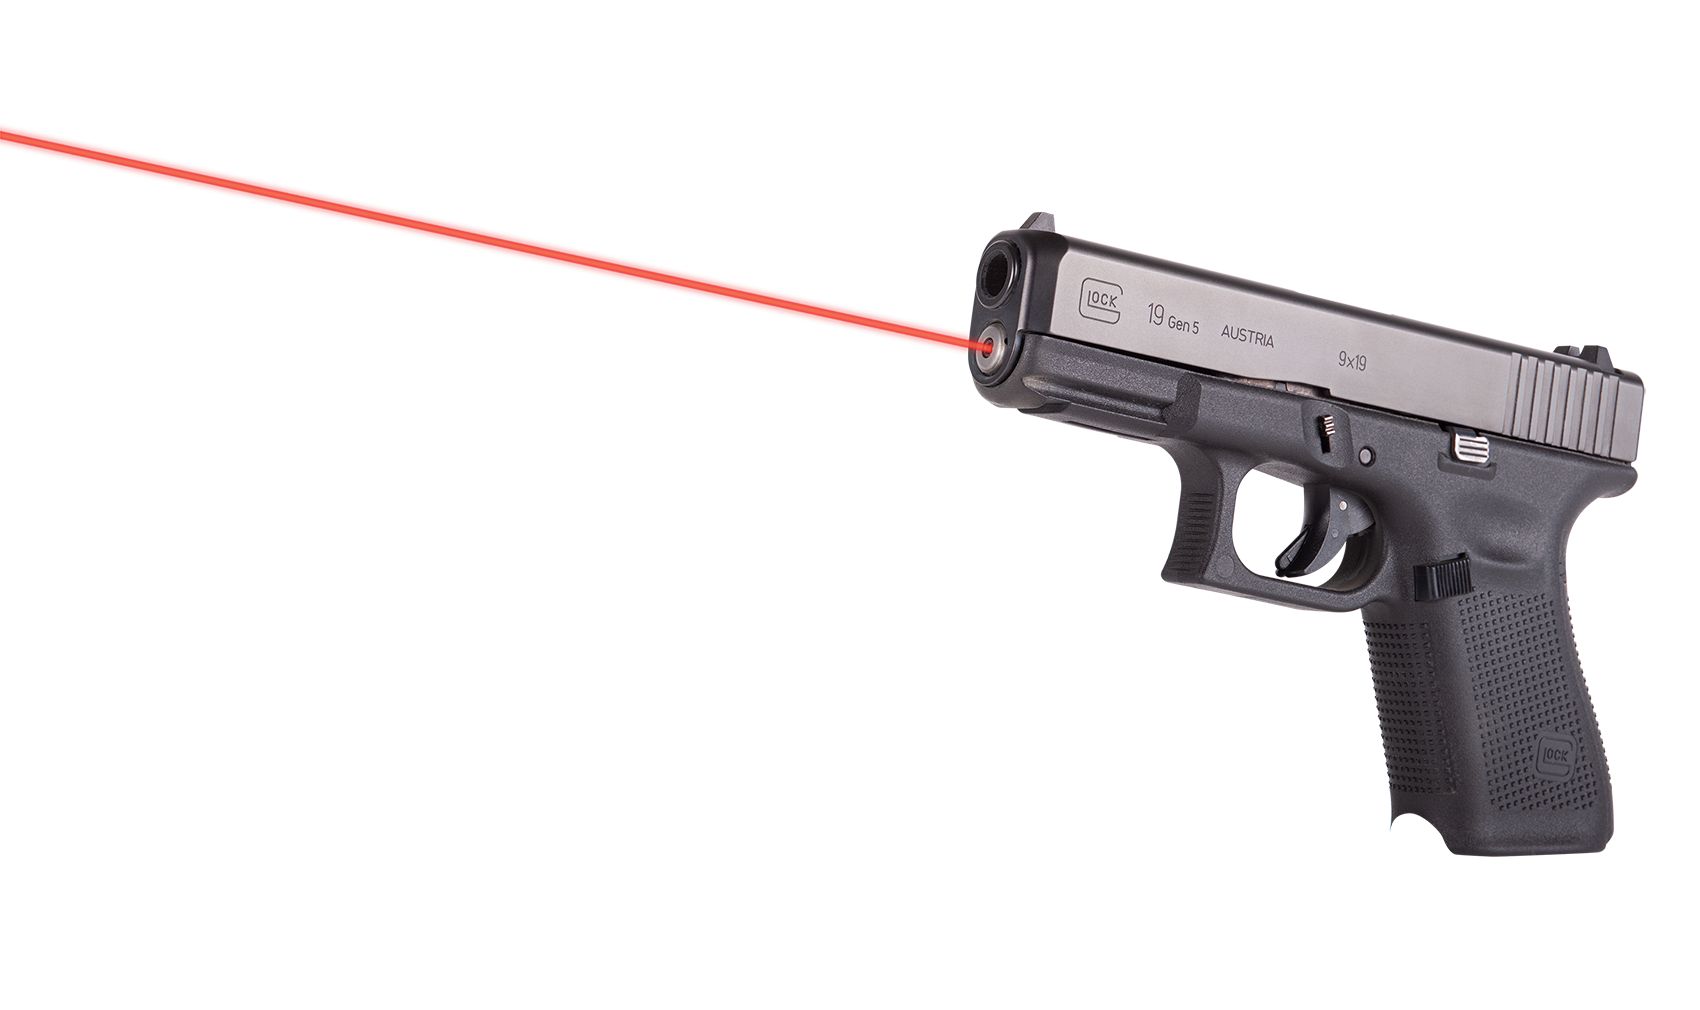 Laserový zaměřovač LaserMax Guide Rod - červený (Glock 19 Gen5)